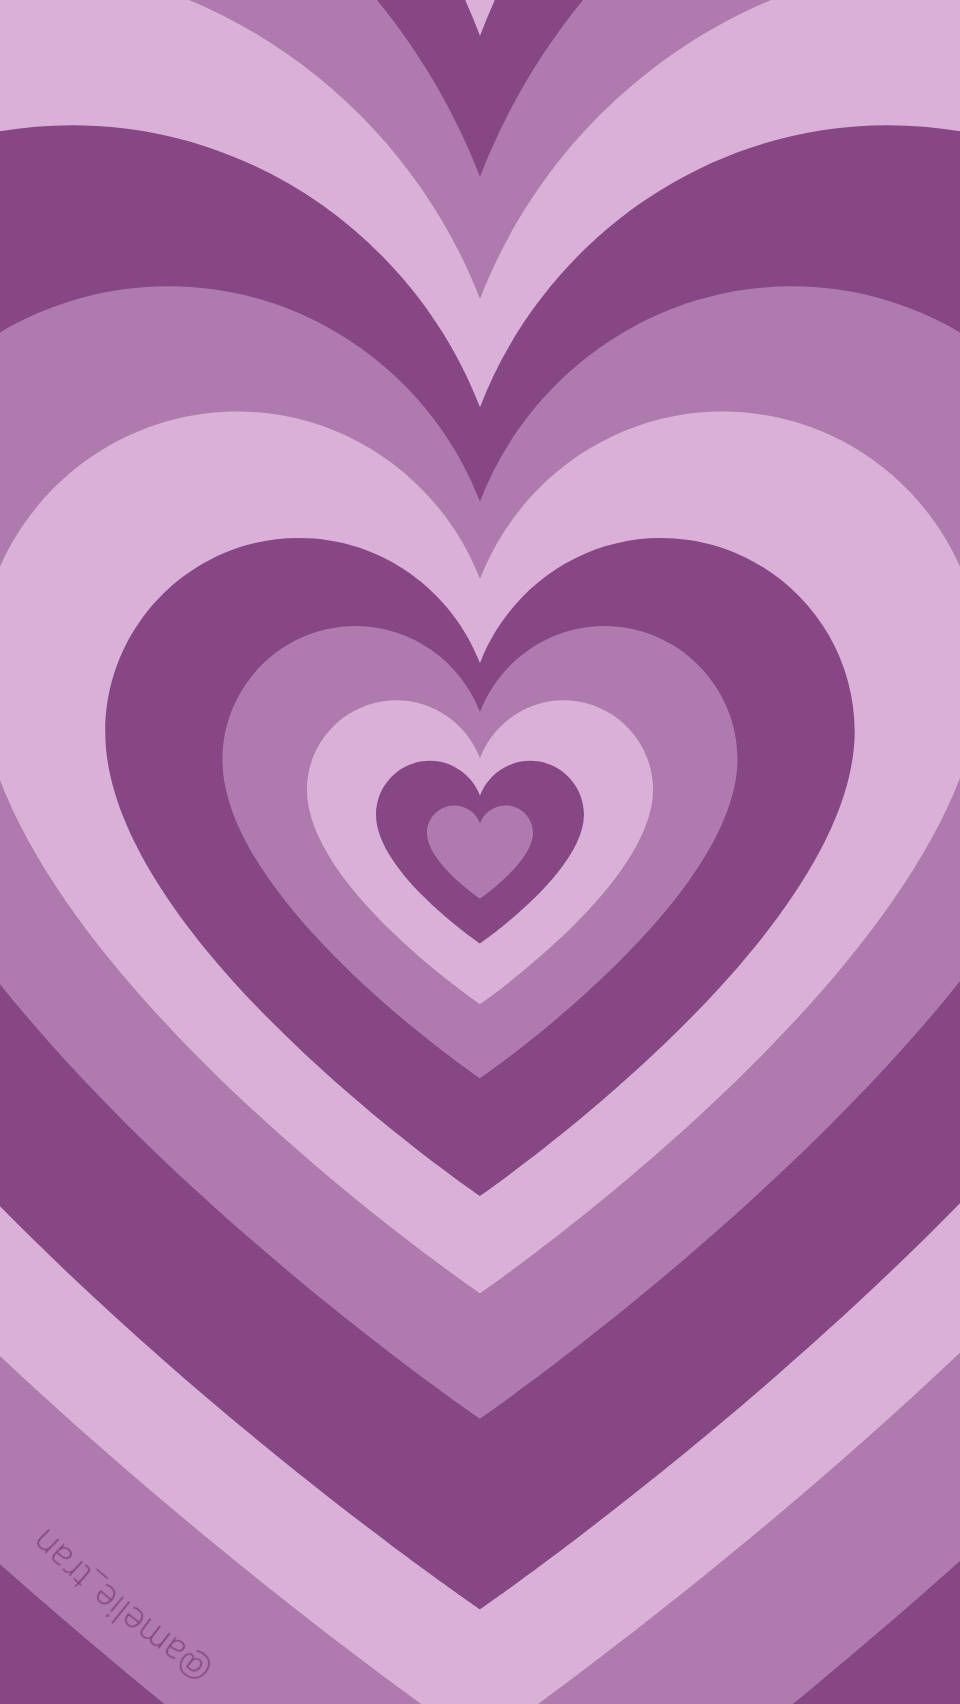 Free Heart Aesthetic Wallpaper Downloads, Heart Aesthetic Wallpaper for FREE